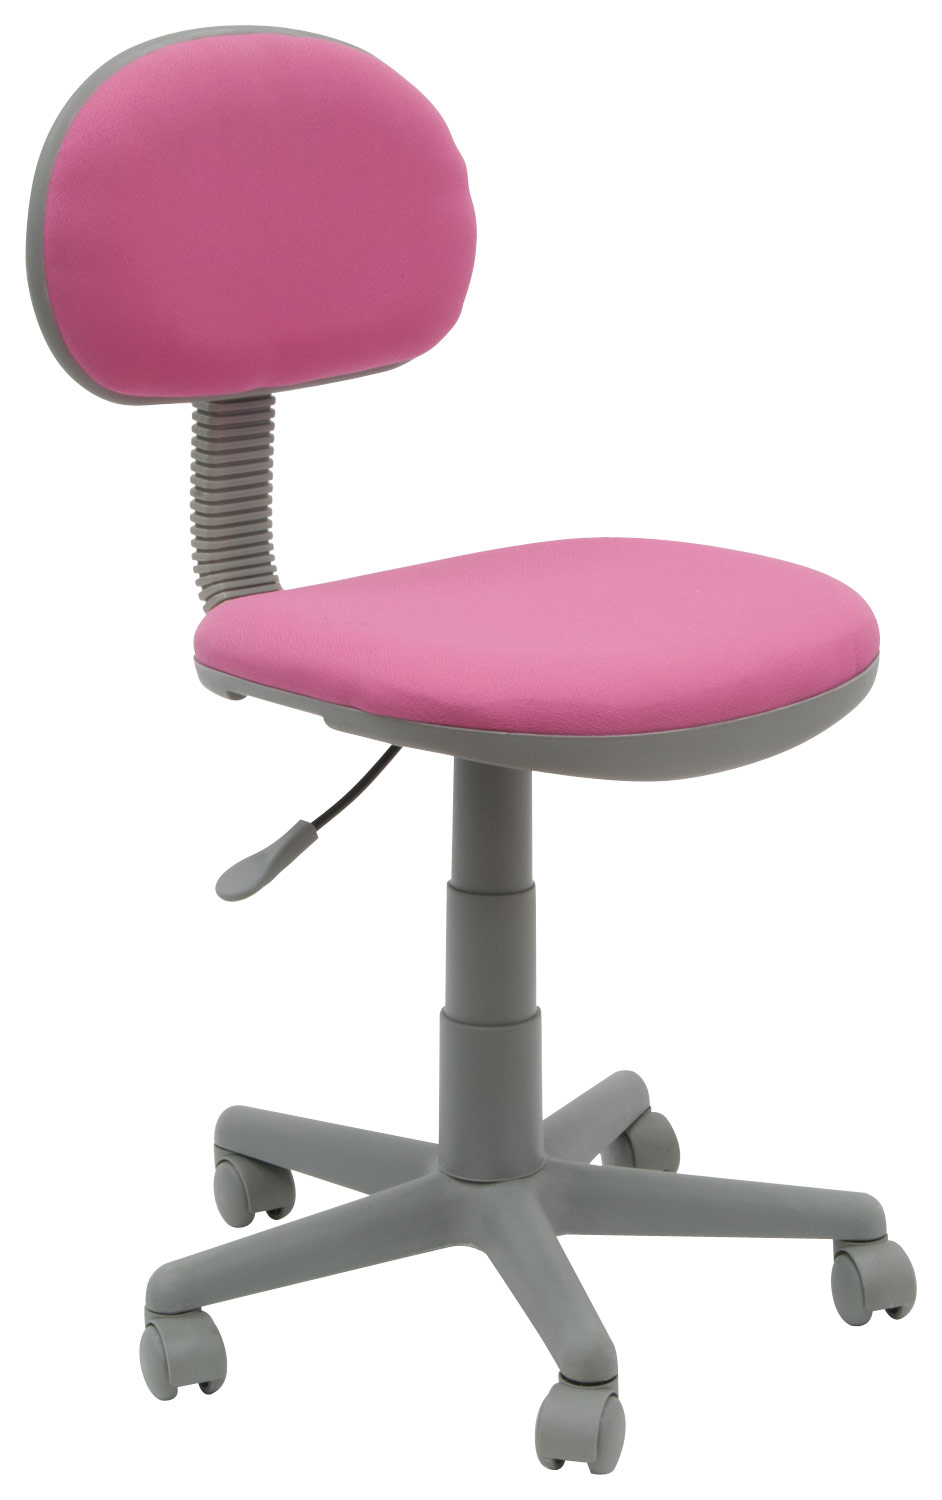 Studio Designs - Deluxe Task Chair - Pink/Gray